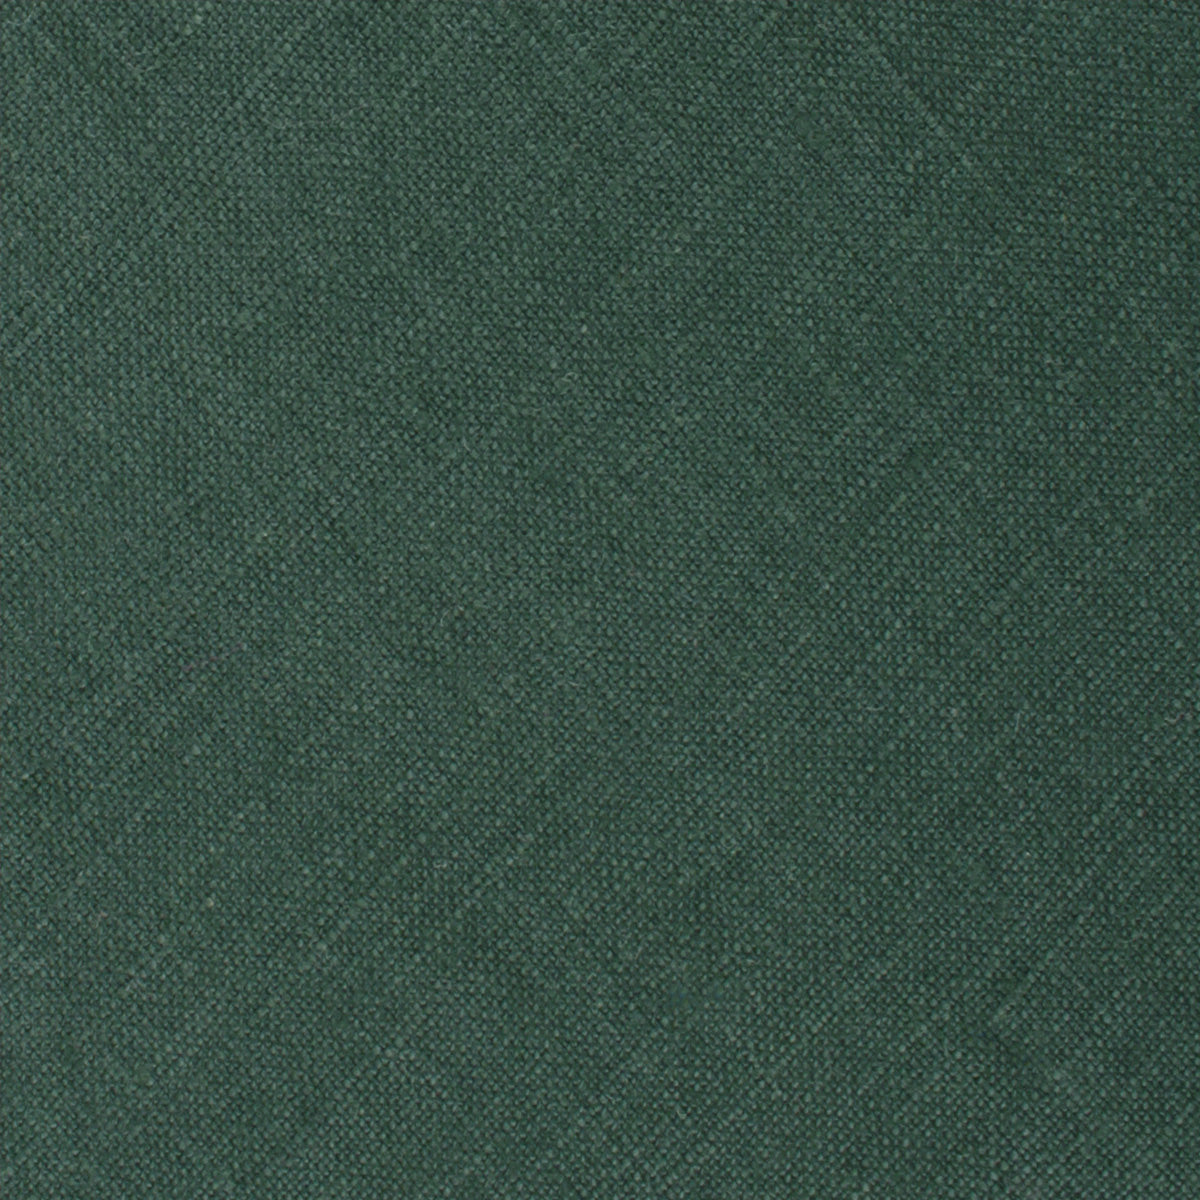 Dusty Emerald Green Linen Kids Bow Tie Fabric